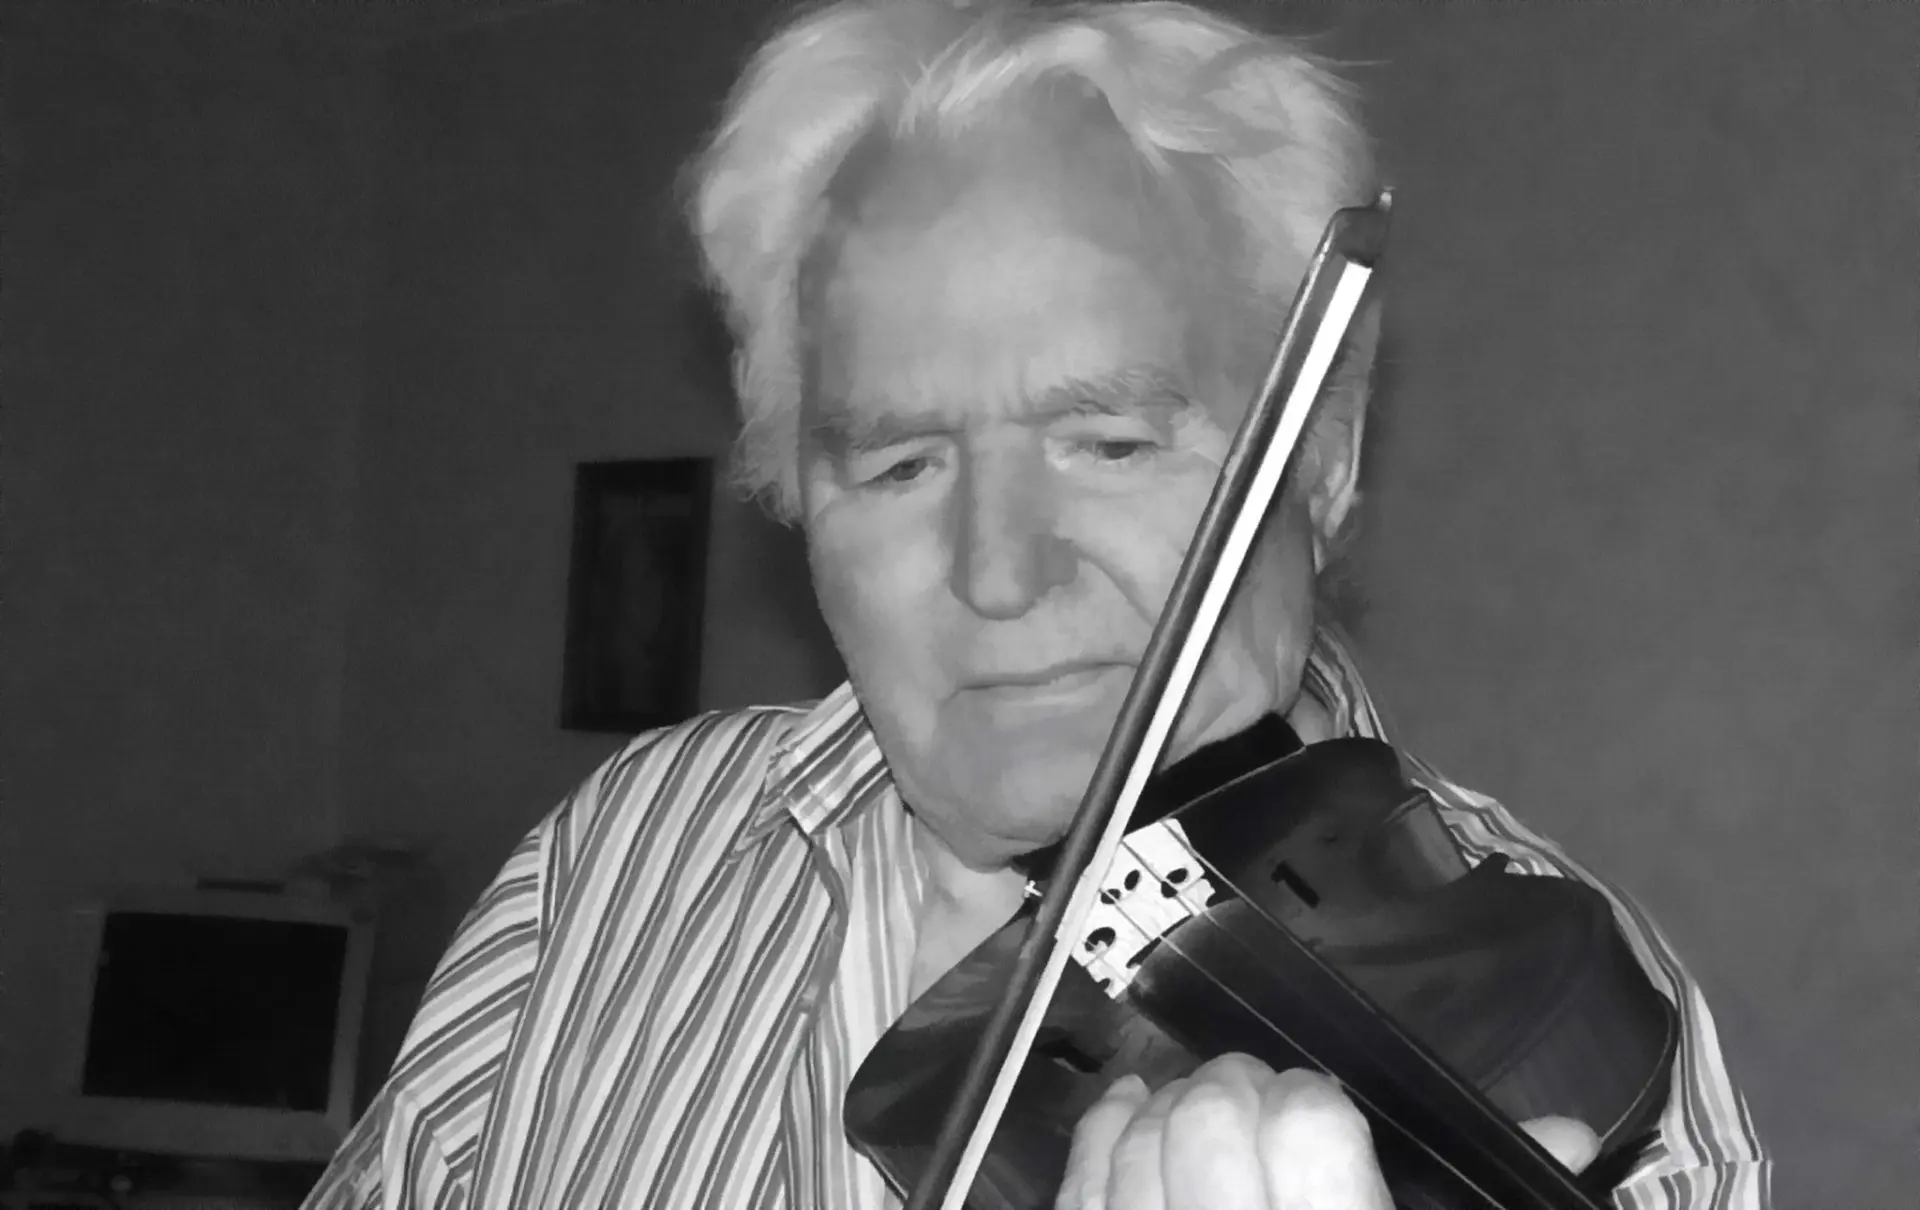 Отец Анны Герман был шпионом?.. Артур Герман на своей скрипке играет "Аве Марию" в честь памяти племянницы Анны Герман, 2011 год, Германия